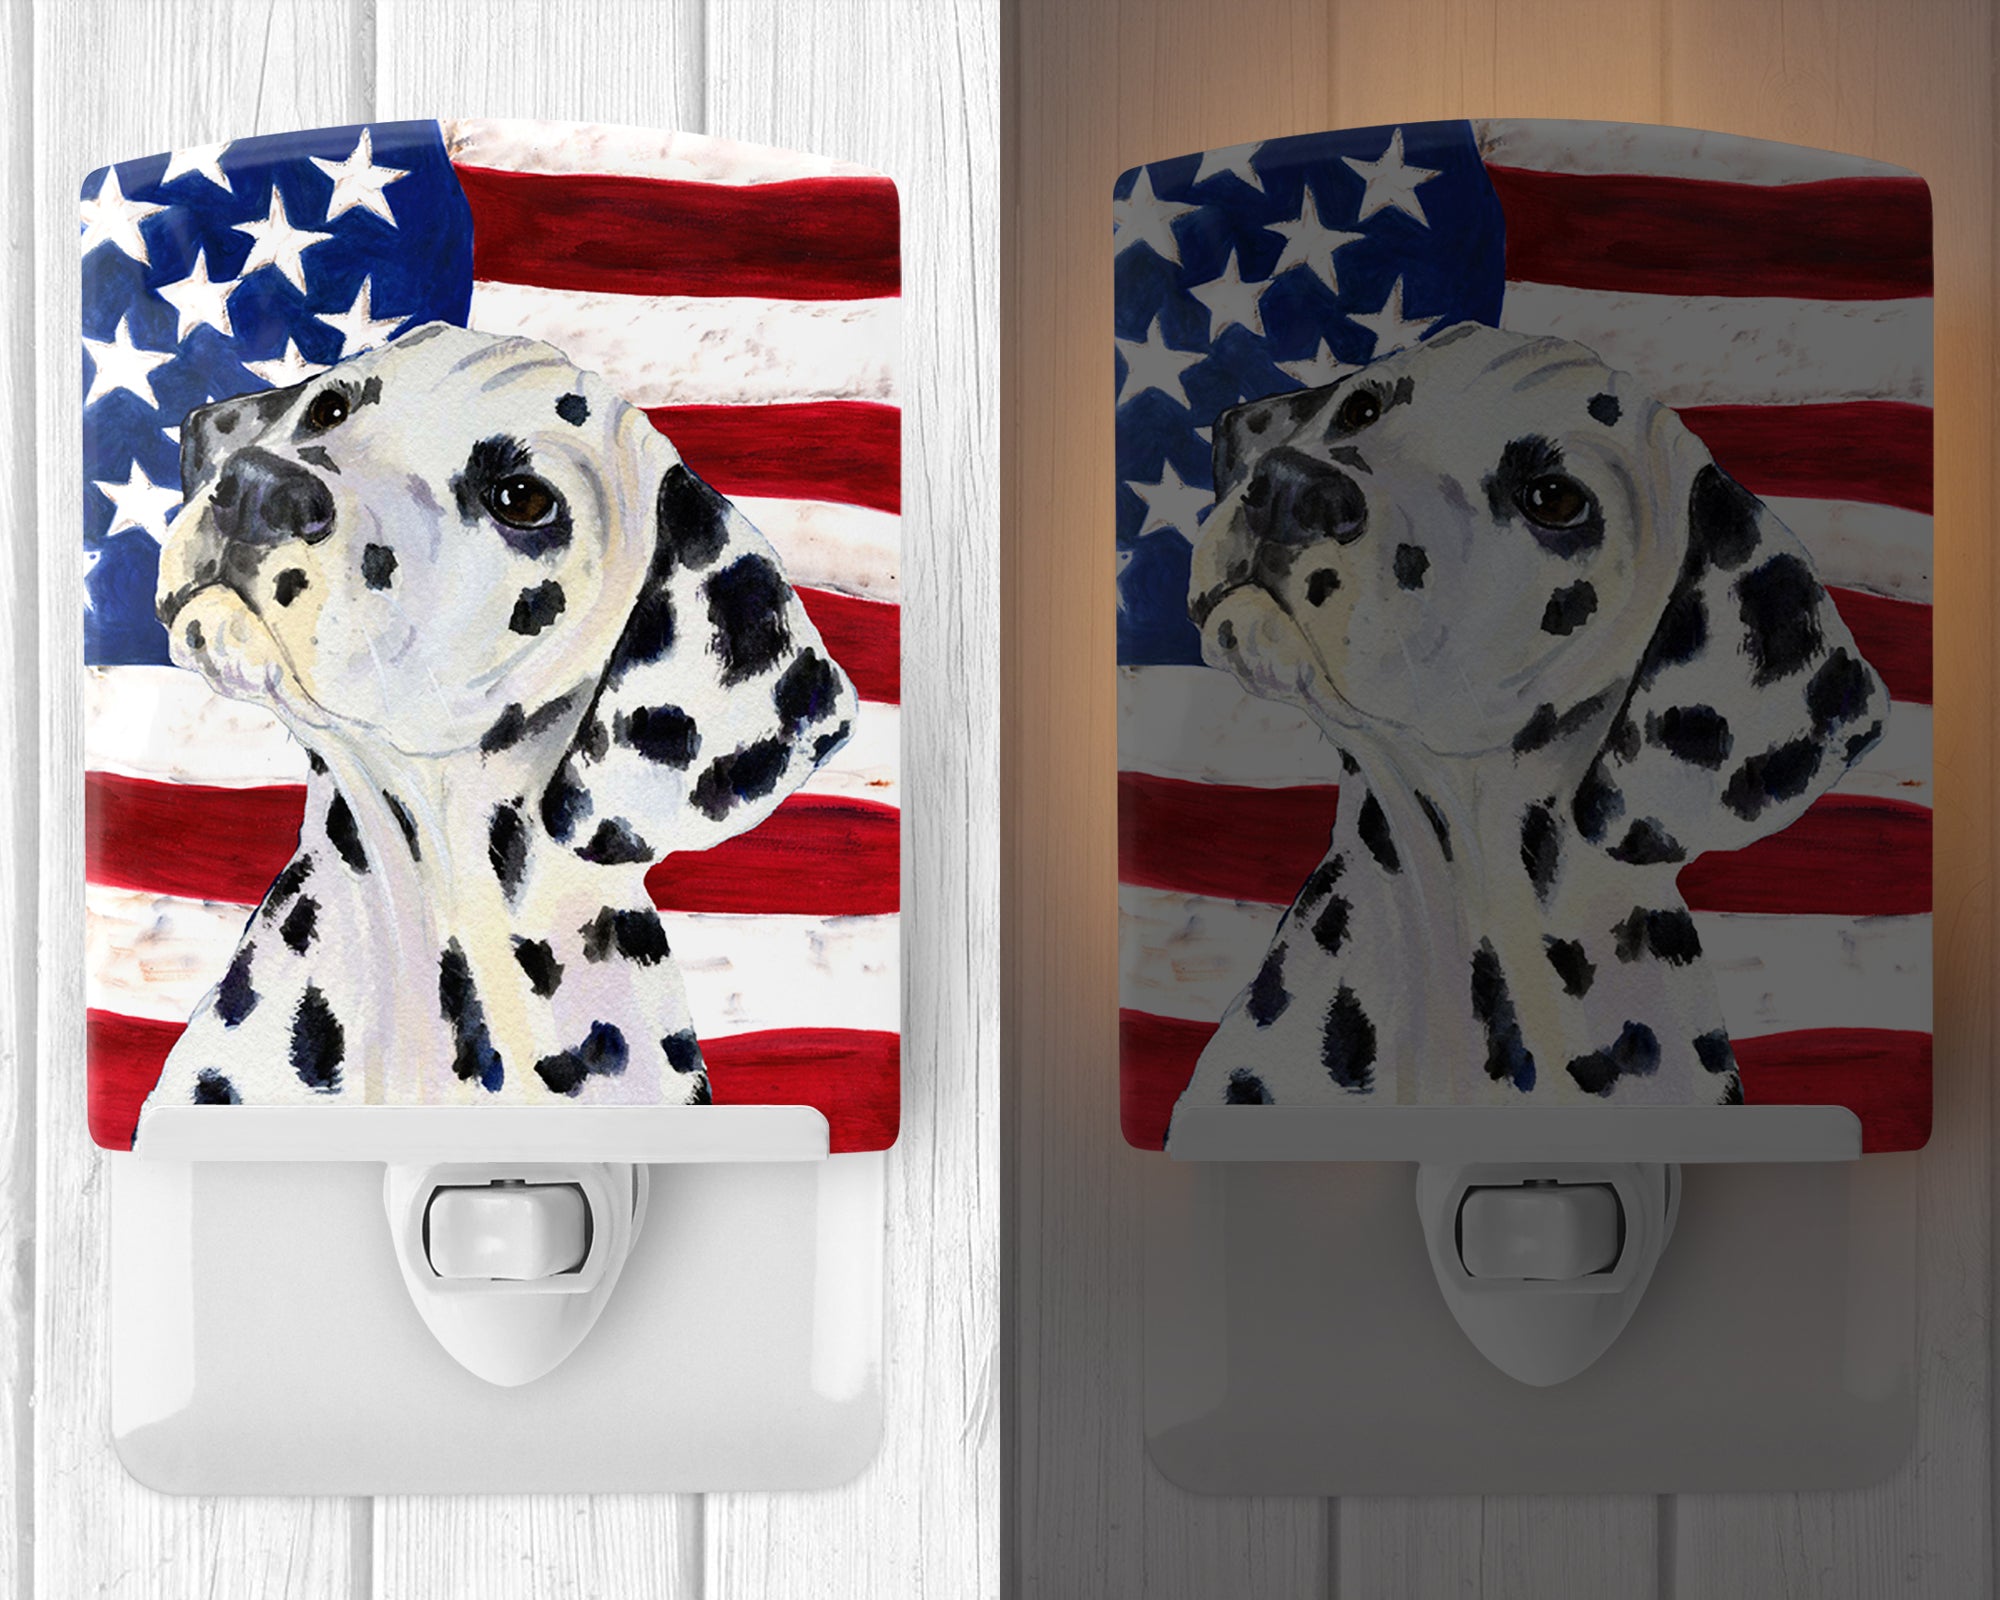 USA American Flag with Dalmatian Ceramic Night Light SS4018CNL - the-store.com